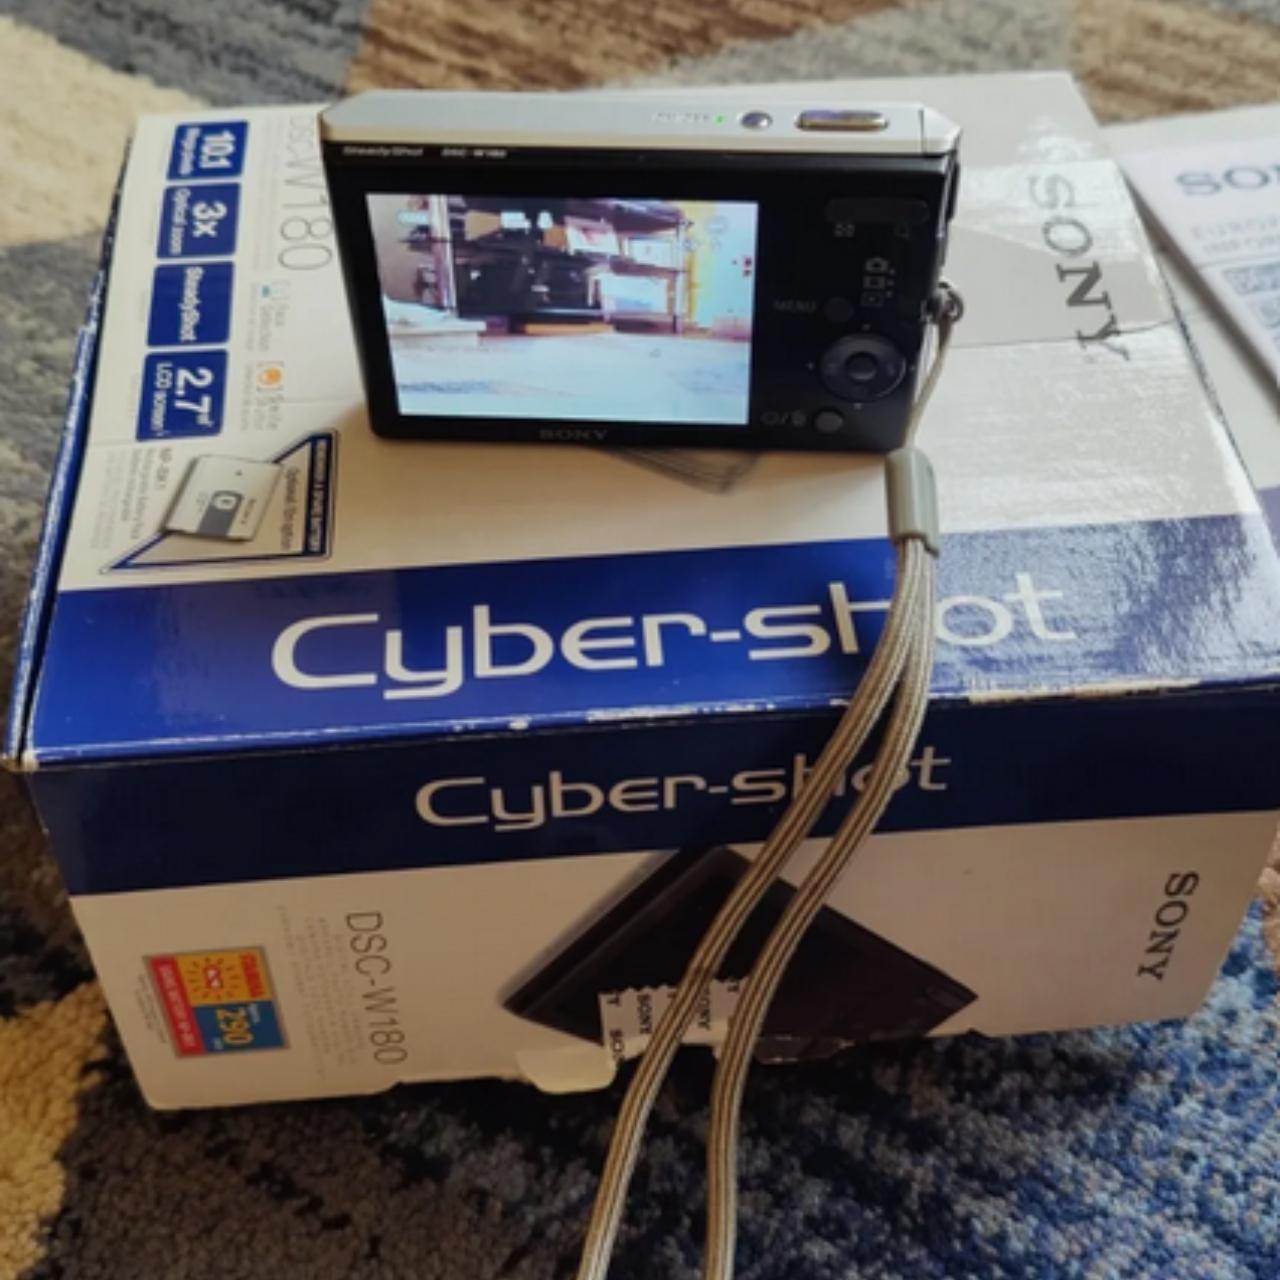 Sony Cybershot DSC-W180 10.1MP Digital Camera with 3x